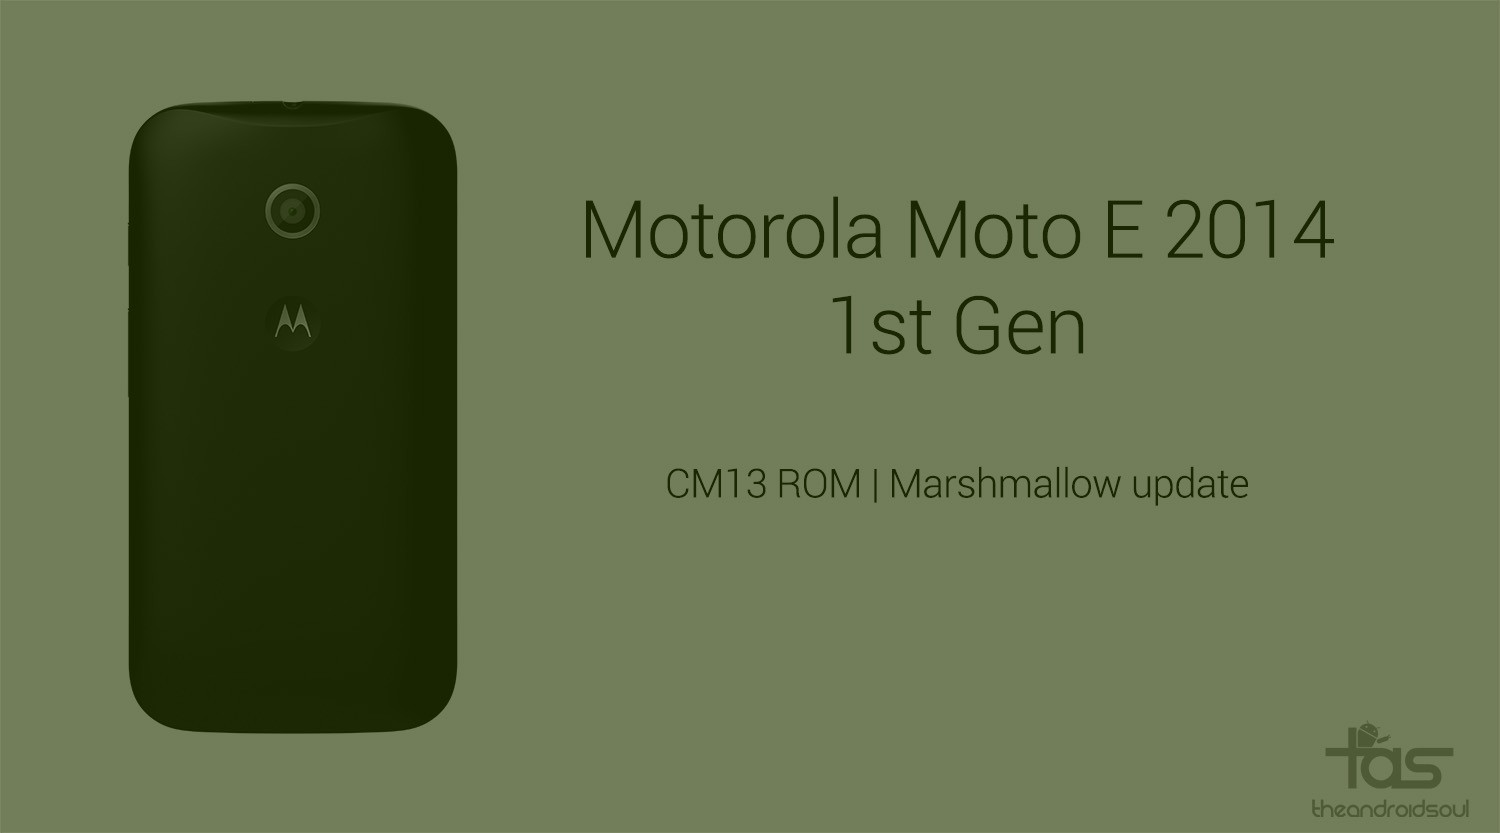 CM13 para Moto E 1st Gen obtiene la actualización de Marshmallow extraoficialmente